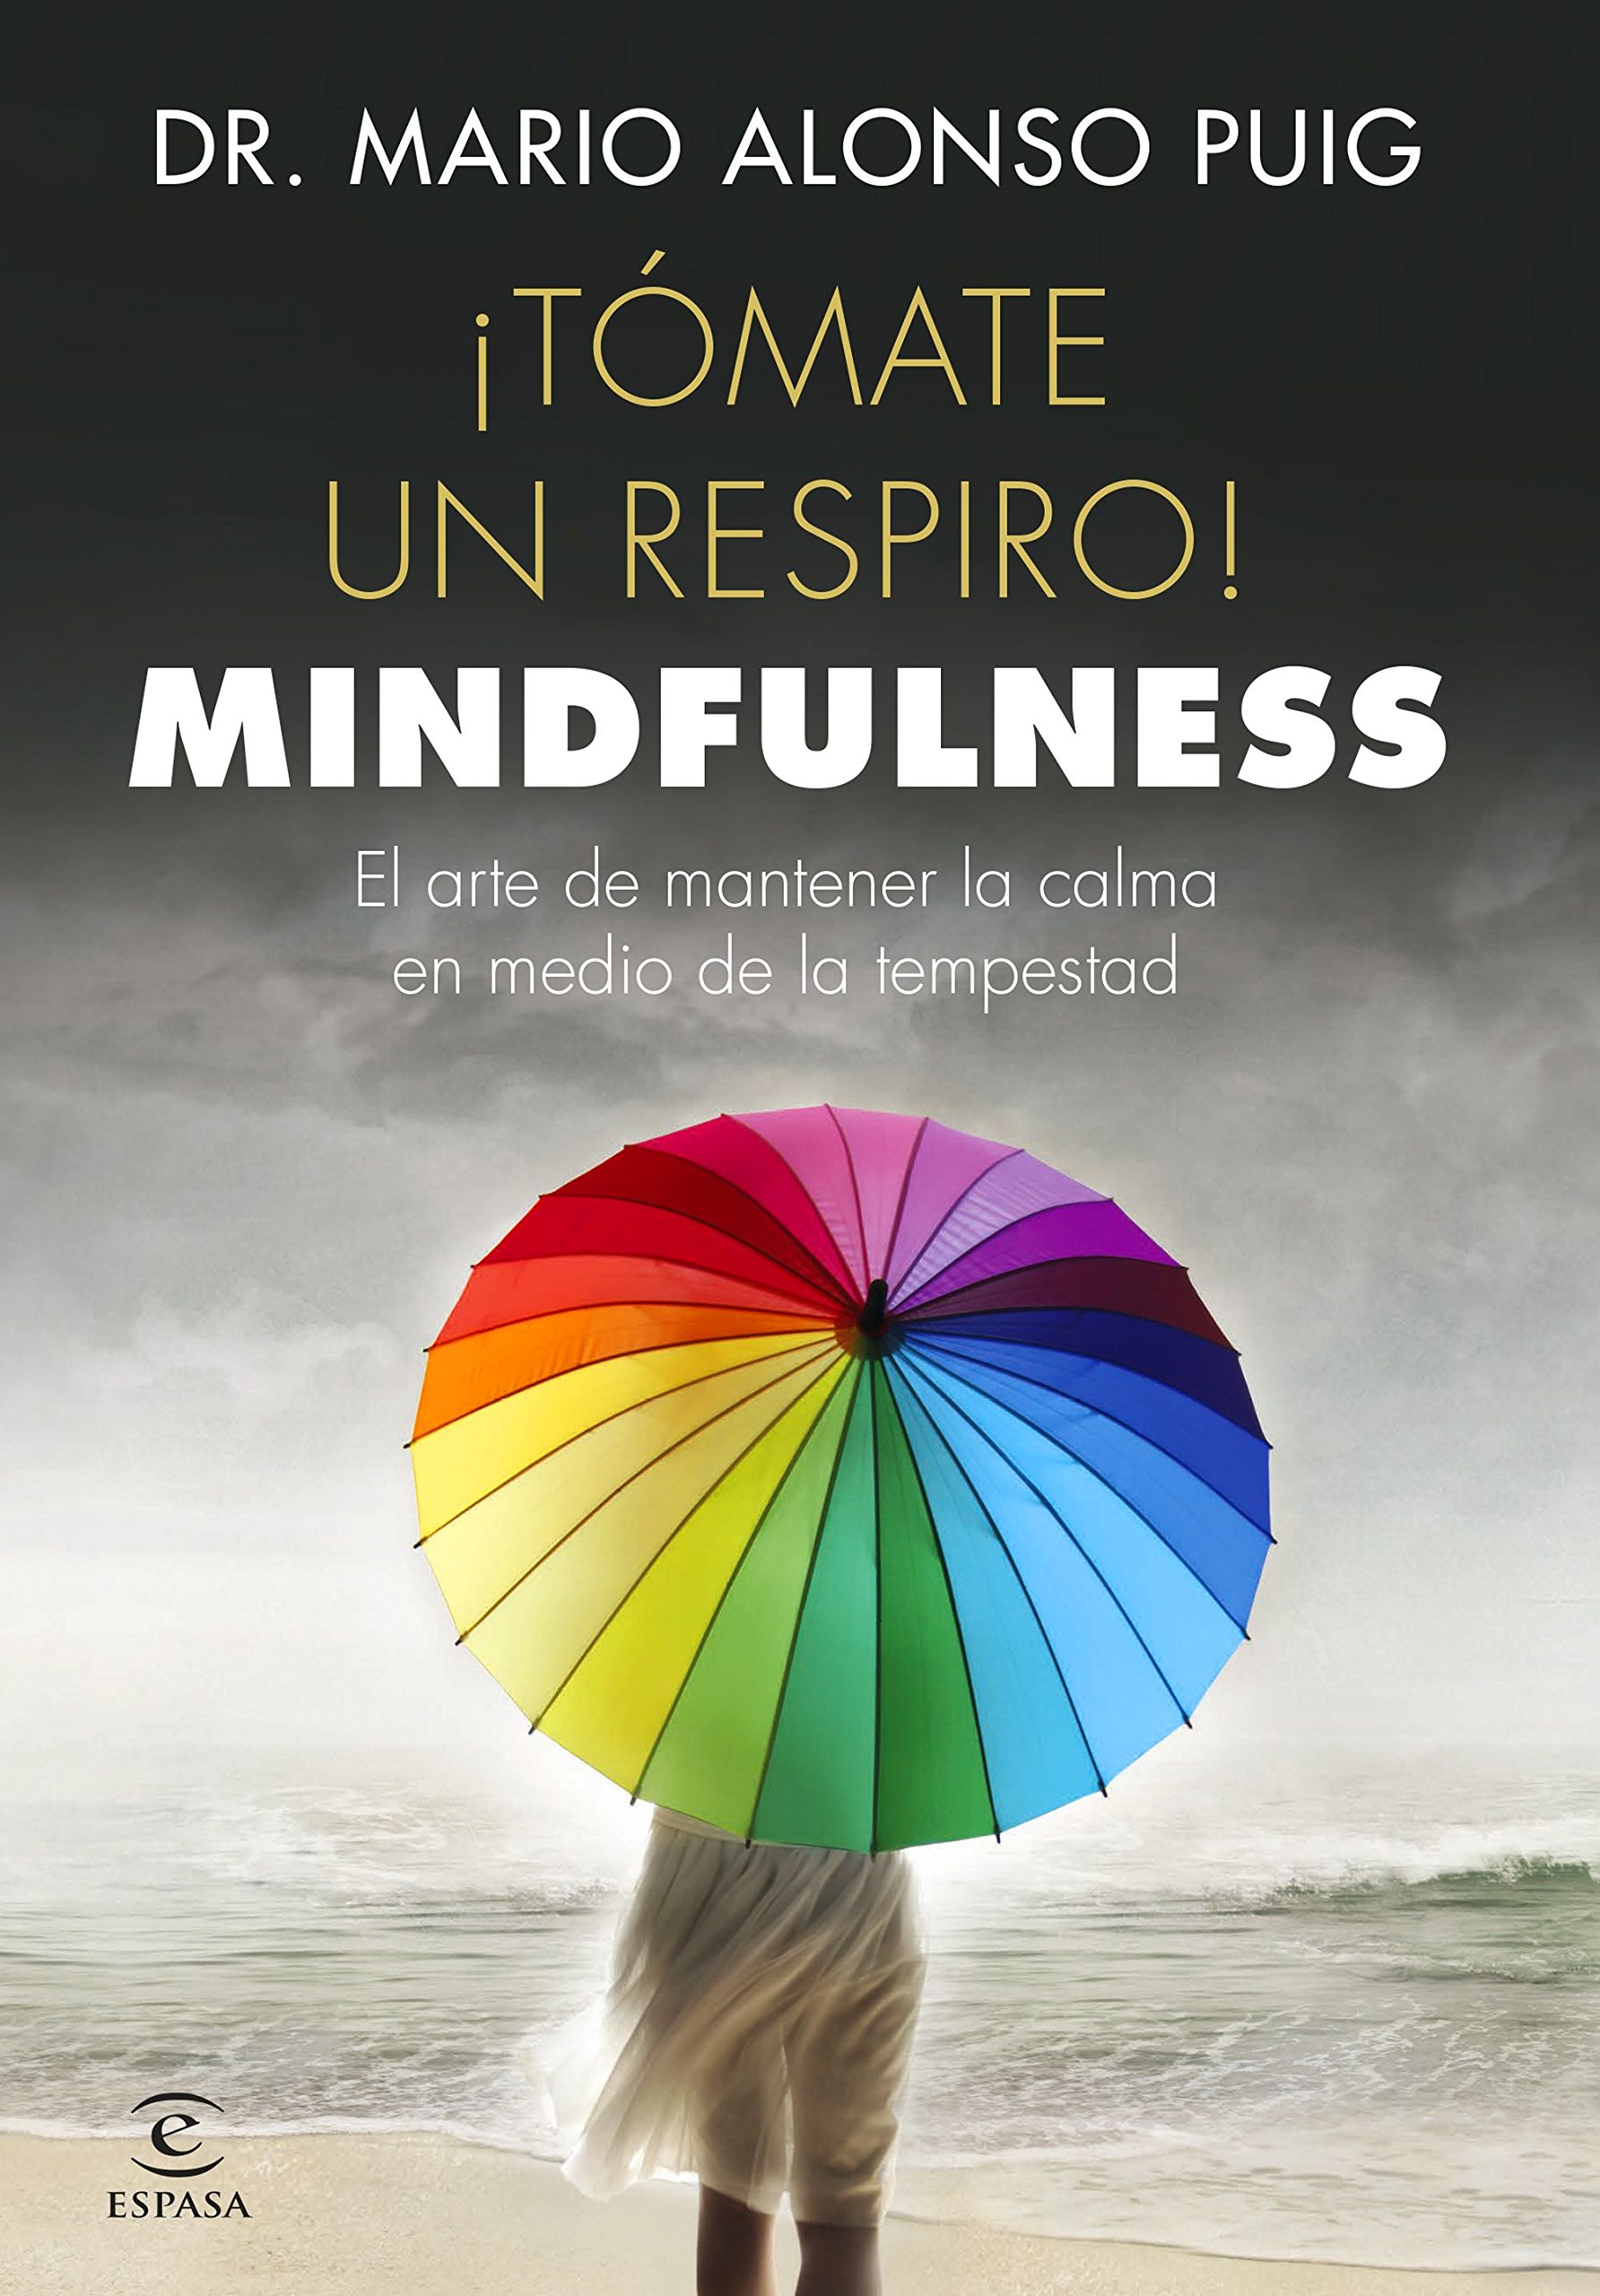 Portada libro mindfulness chica con paraguas multicolor: Tómate un respiro! Mindfulness: El arte de mantener la calma en medio de la  tempestad de Mario Alonso Puig